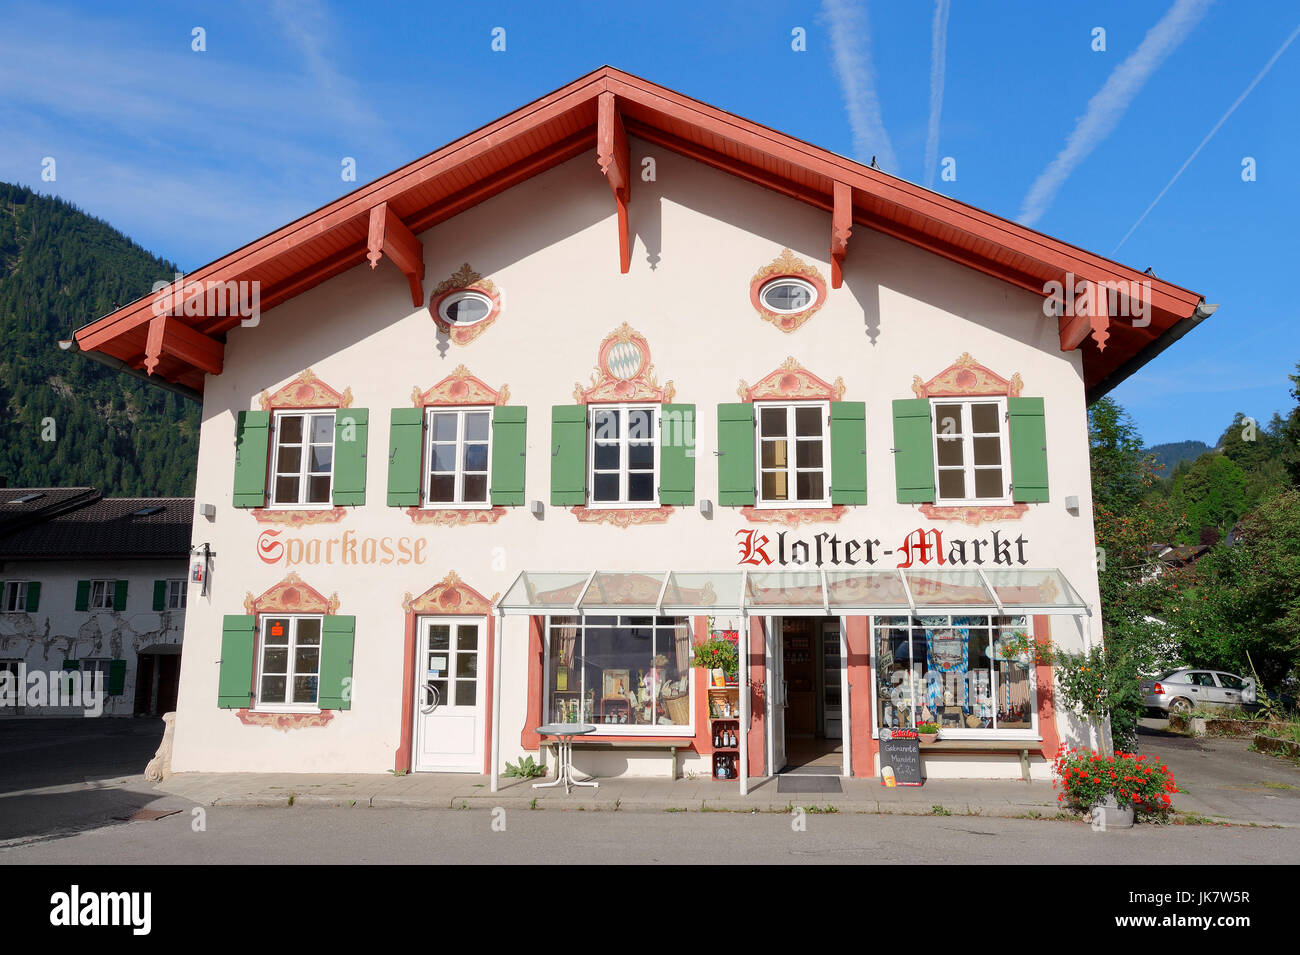 Shop 'Kloster-Markt', Ettal, Baviera, Alemania / monasterio mercado | Geschaeft 'Kloster-Markt', Ettal, Bayern, Deutschland Foto de stock